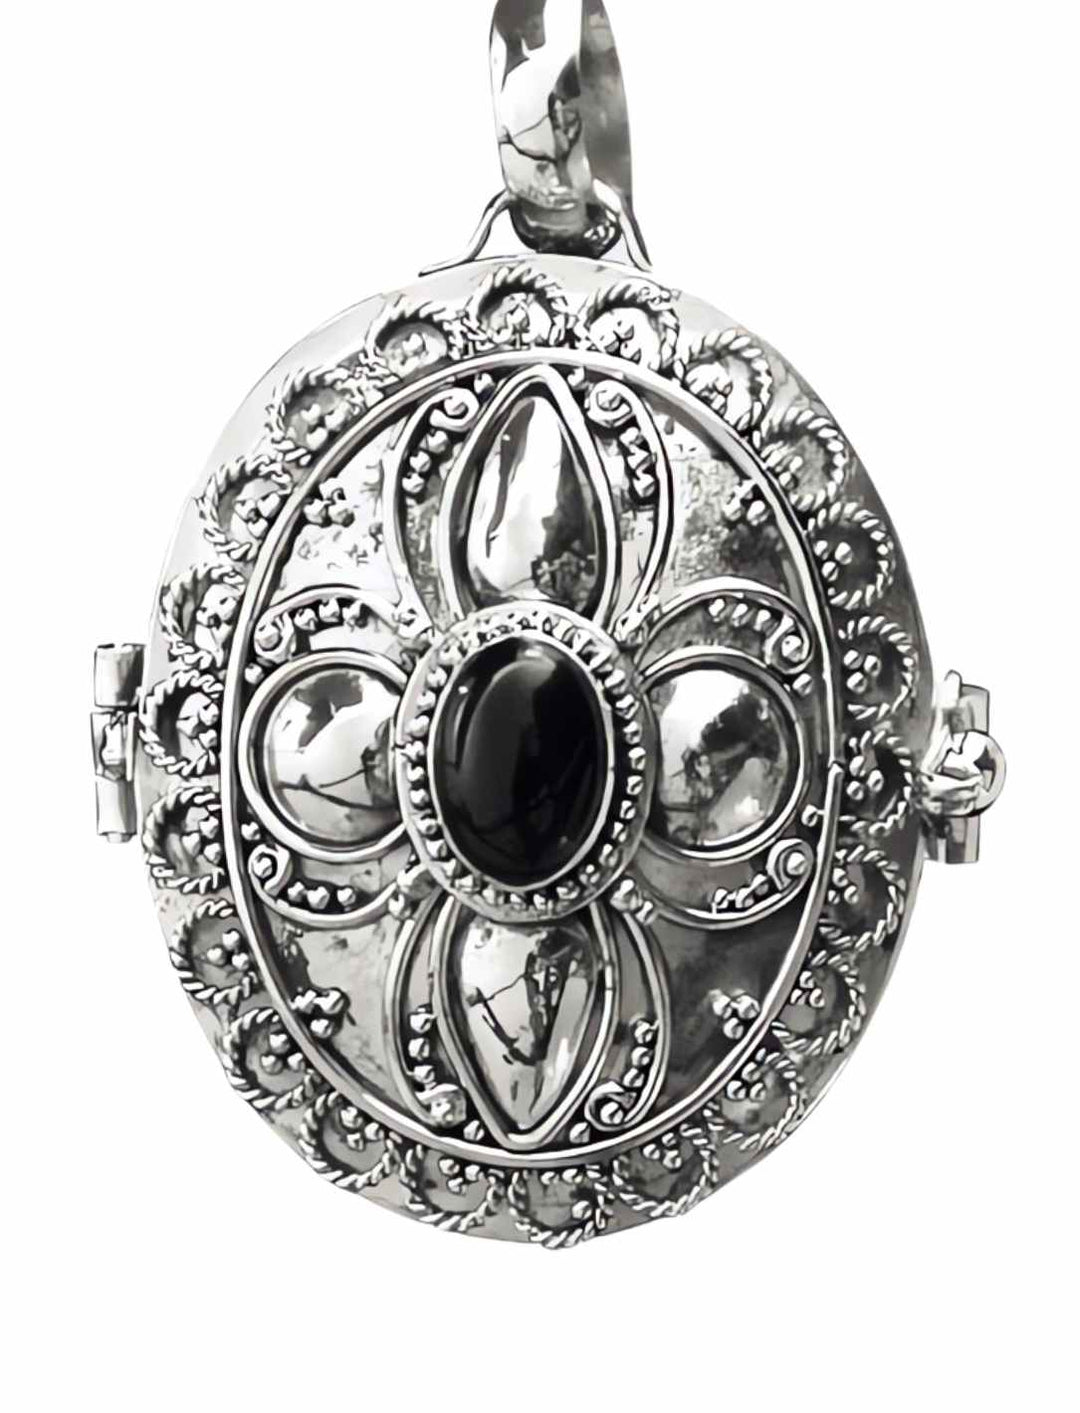 Schattenherz-Amulett aus Silber mit schwarzem Onyx auf weißem Hintergrund - ein Symbol tiefer Mystik